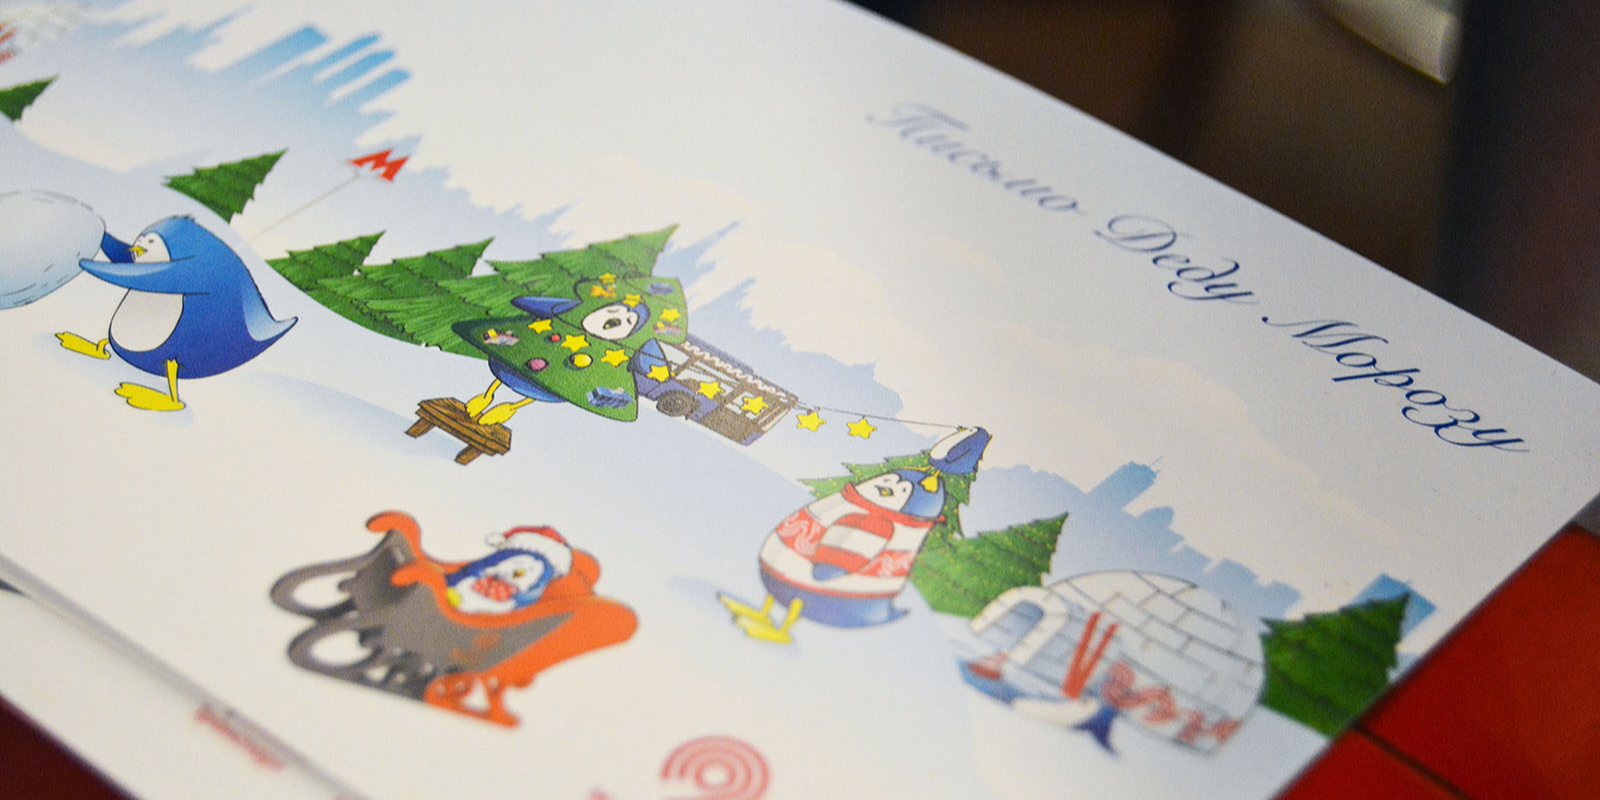 Любой желающий сможет отправить новогодние письма и открытки с пожеланиями родным, друзьям и знакомым, а дети — в резиденцию Деда Мороза. Фото: сайт мэра Москвы